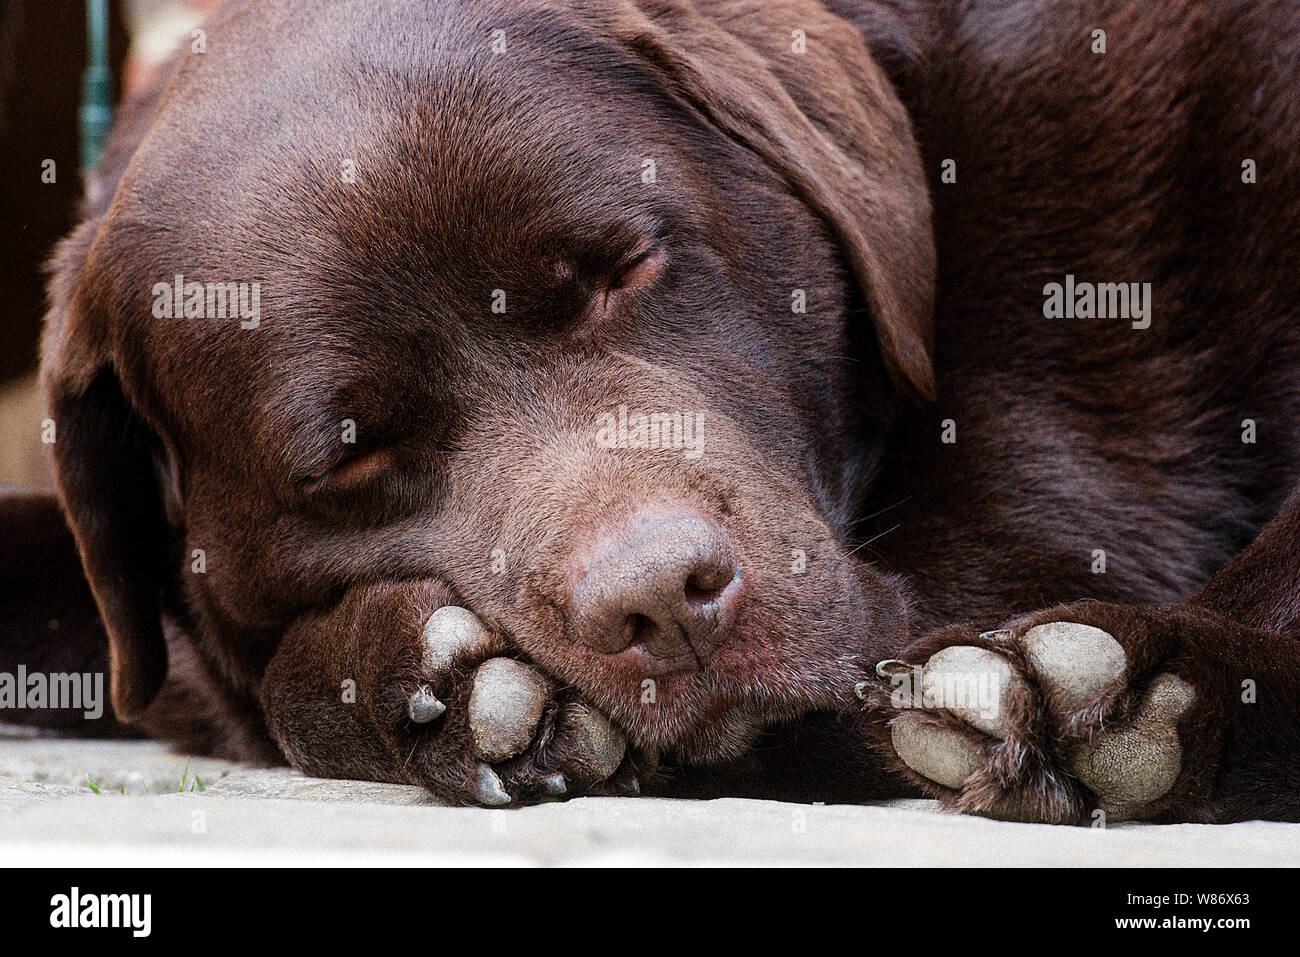 Sleeping Chocolate Colour Labrador Dog Stock Photo